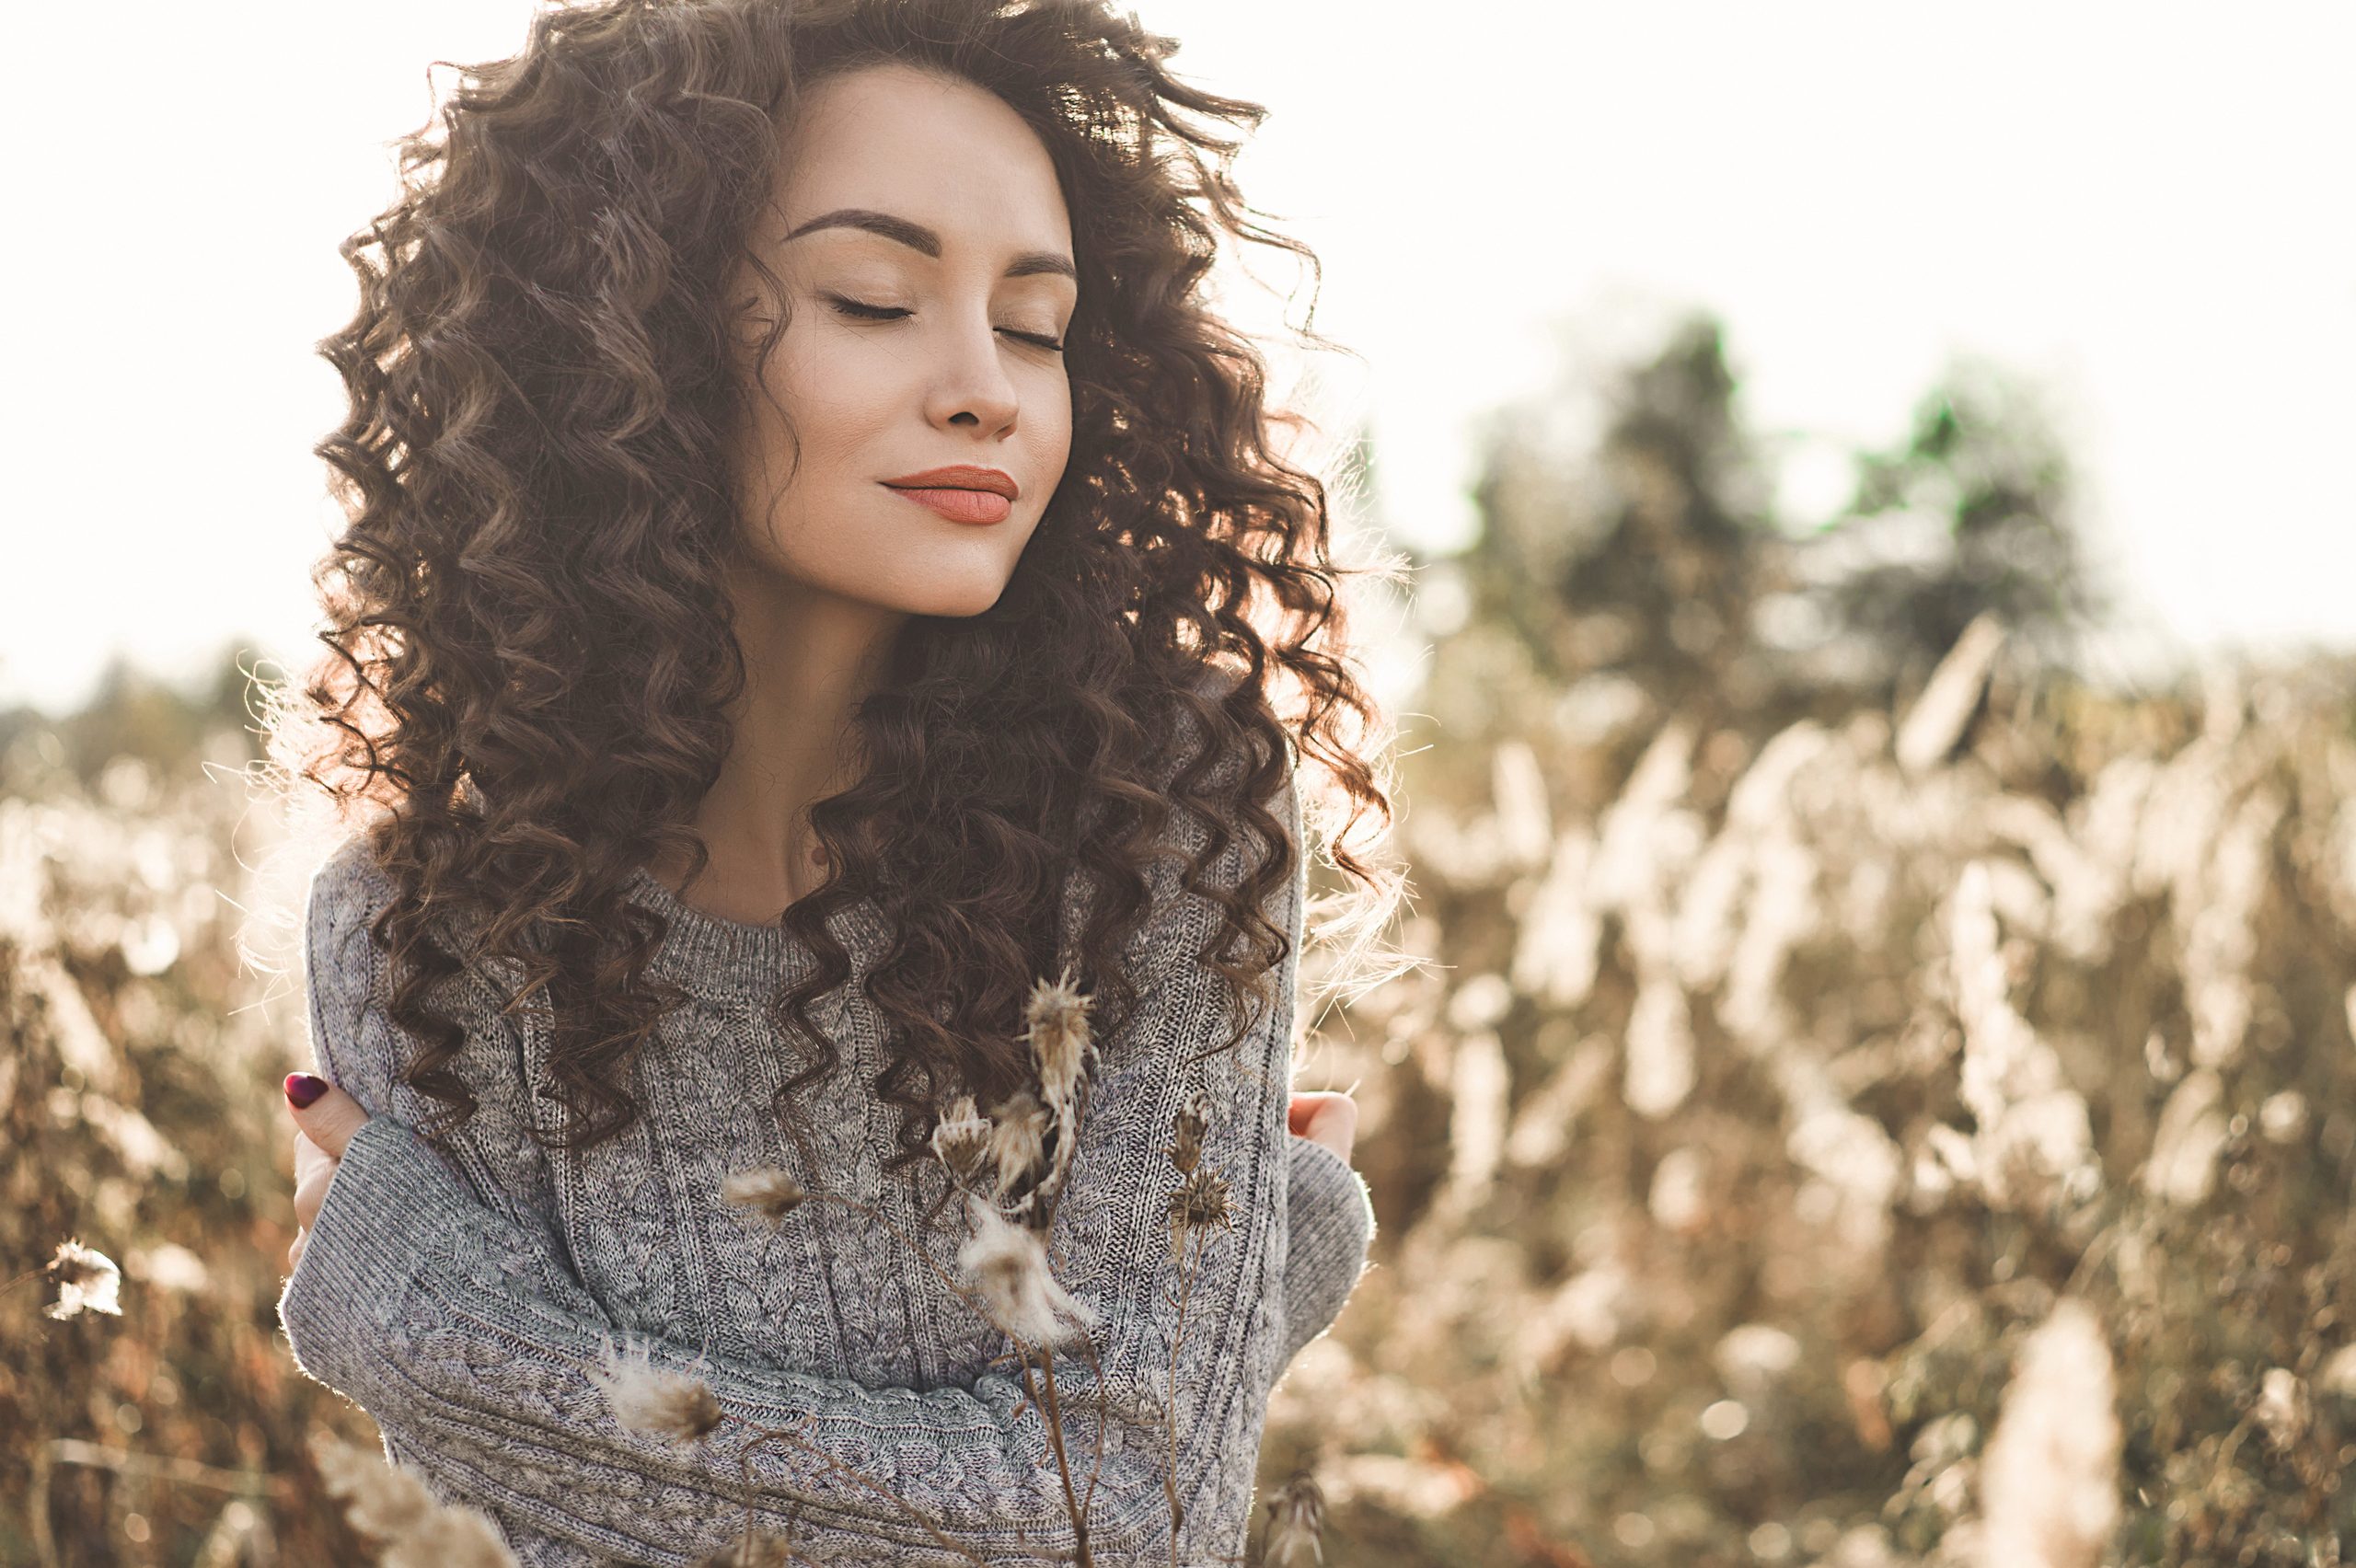 Outdoor atmosphärisches Lifestyle-Foto von jungen schönen Dame. Braunes Haar und braune Augen. Warmer Fall. Herbstbesucher. Softness, Wärme und Komfort